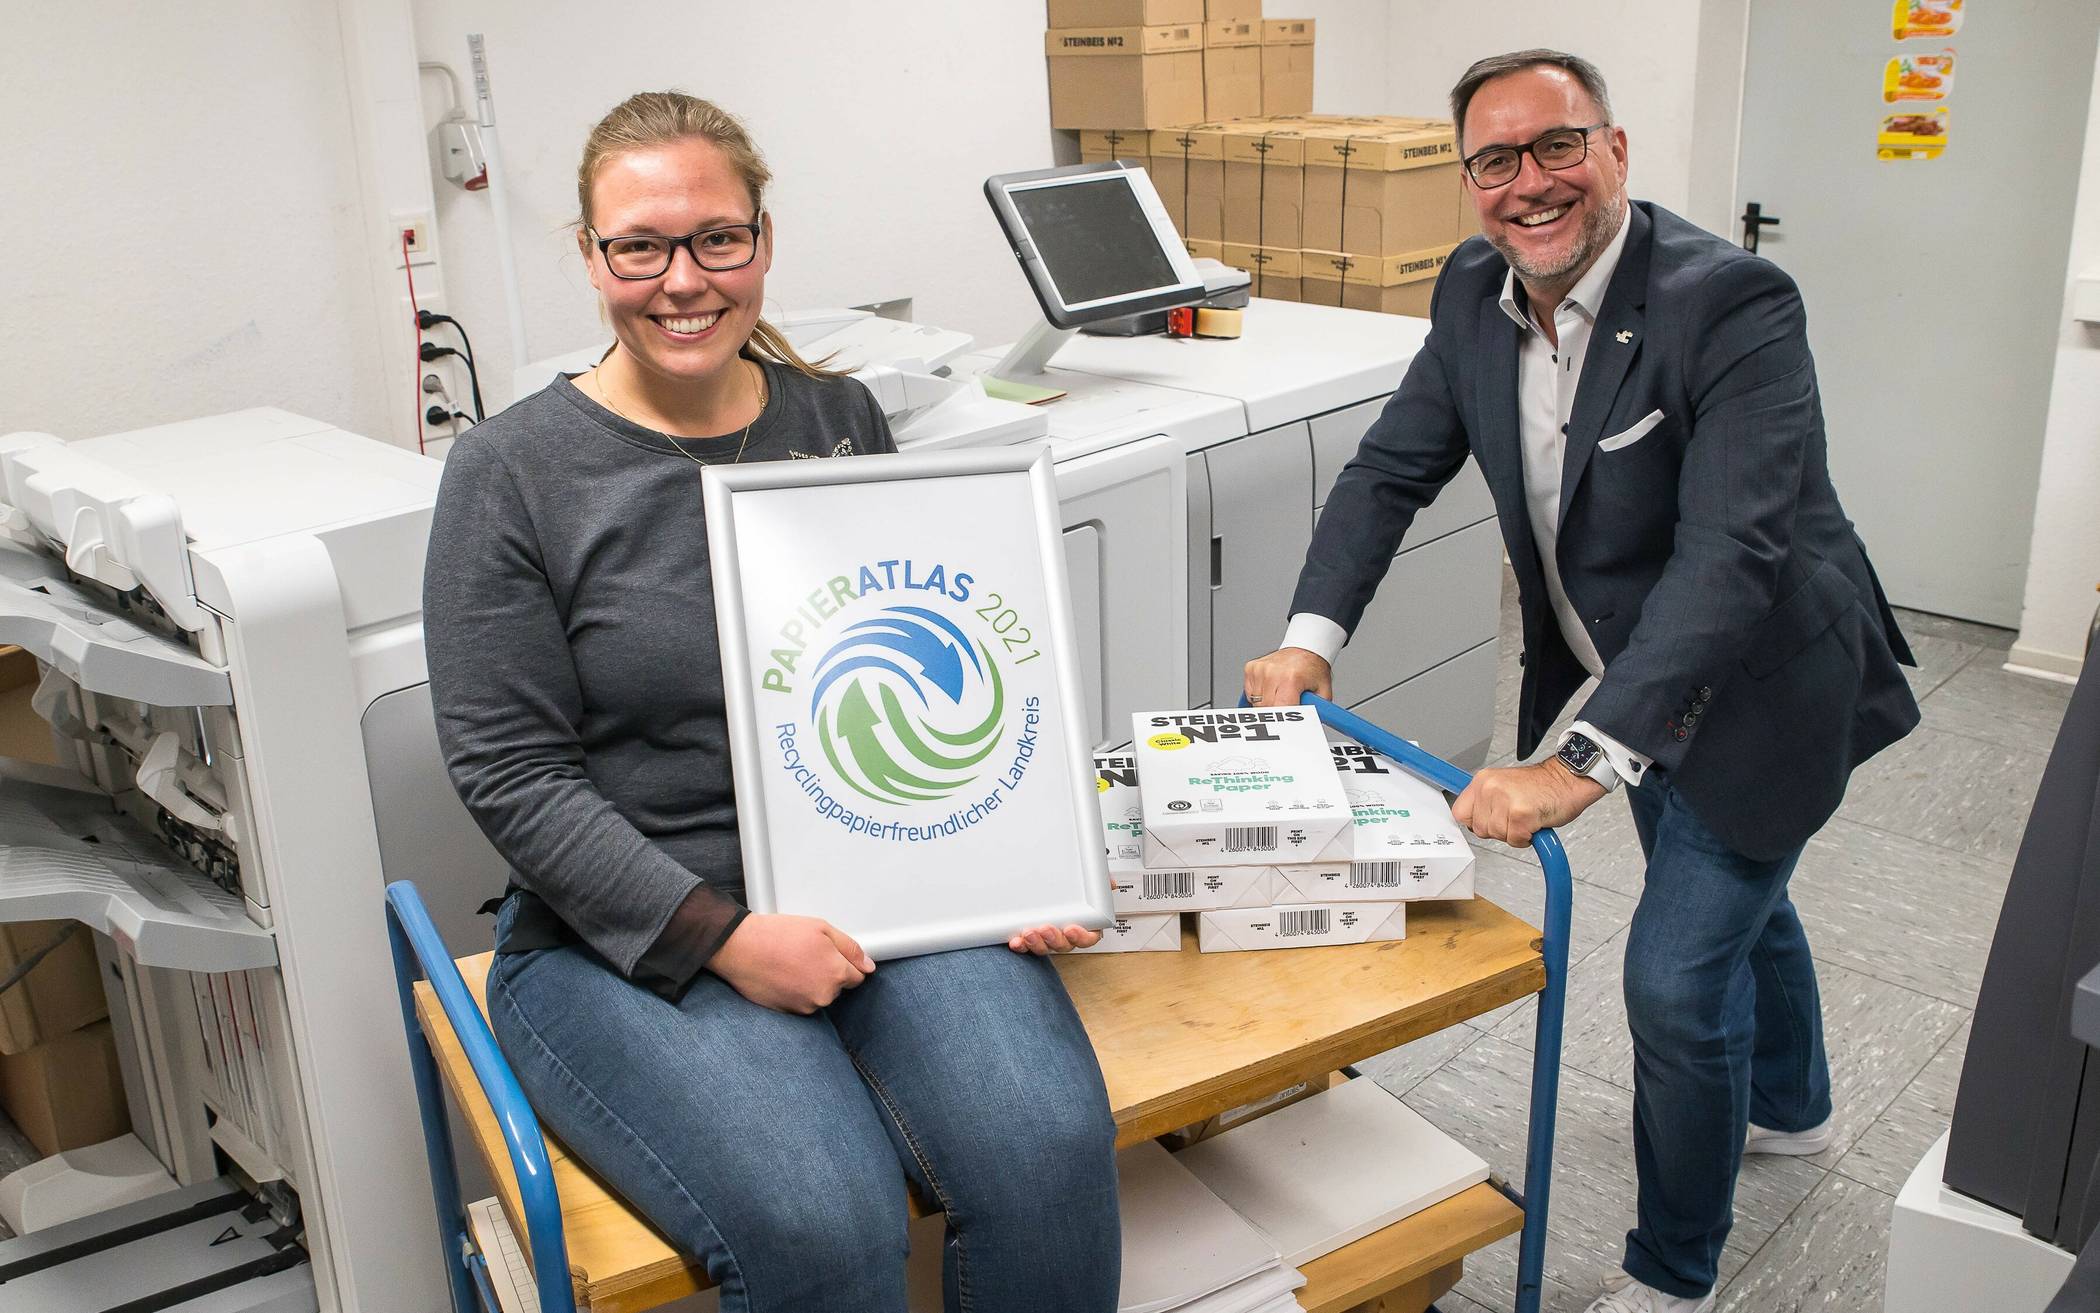  Kreisdezernent Harald Vieten und Sarah Peitz vom Amt für Gebäudewirtschaft freuen sich über die Auszeichnung als recyclingpapierfreundlicher Landkreis. 